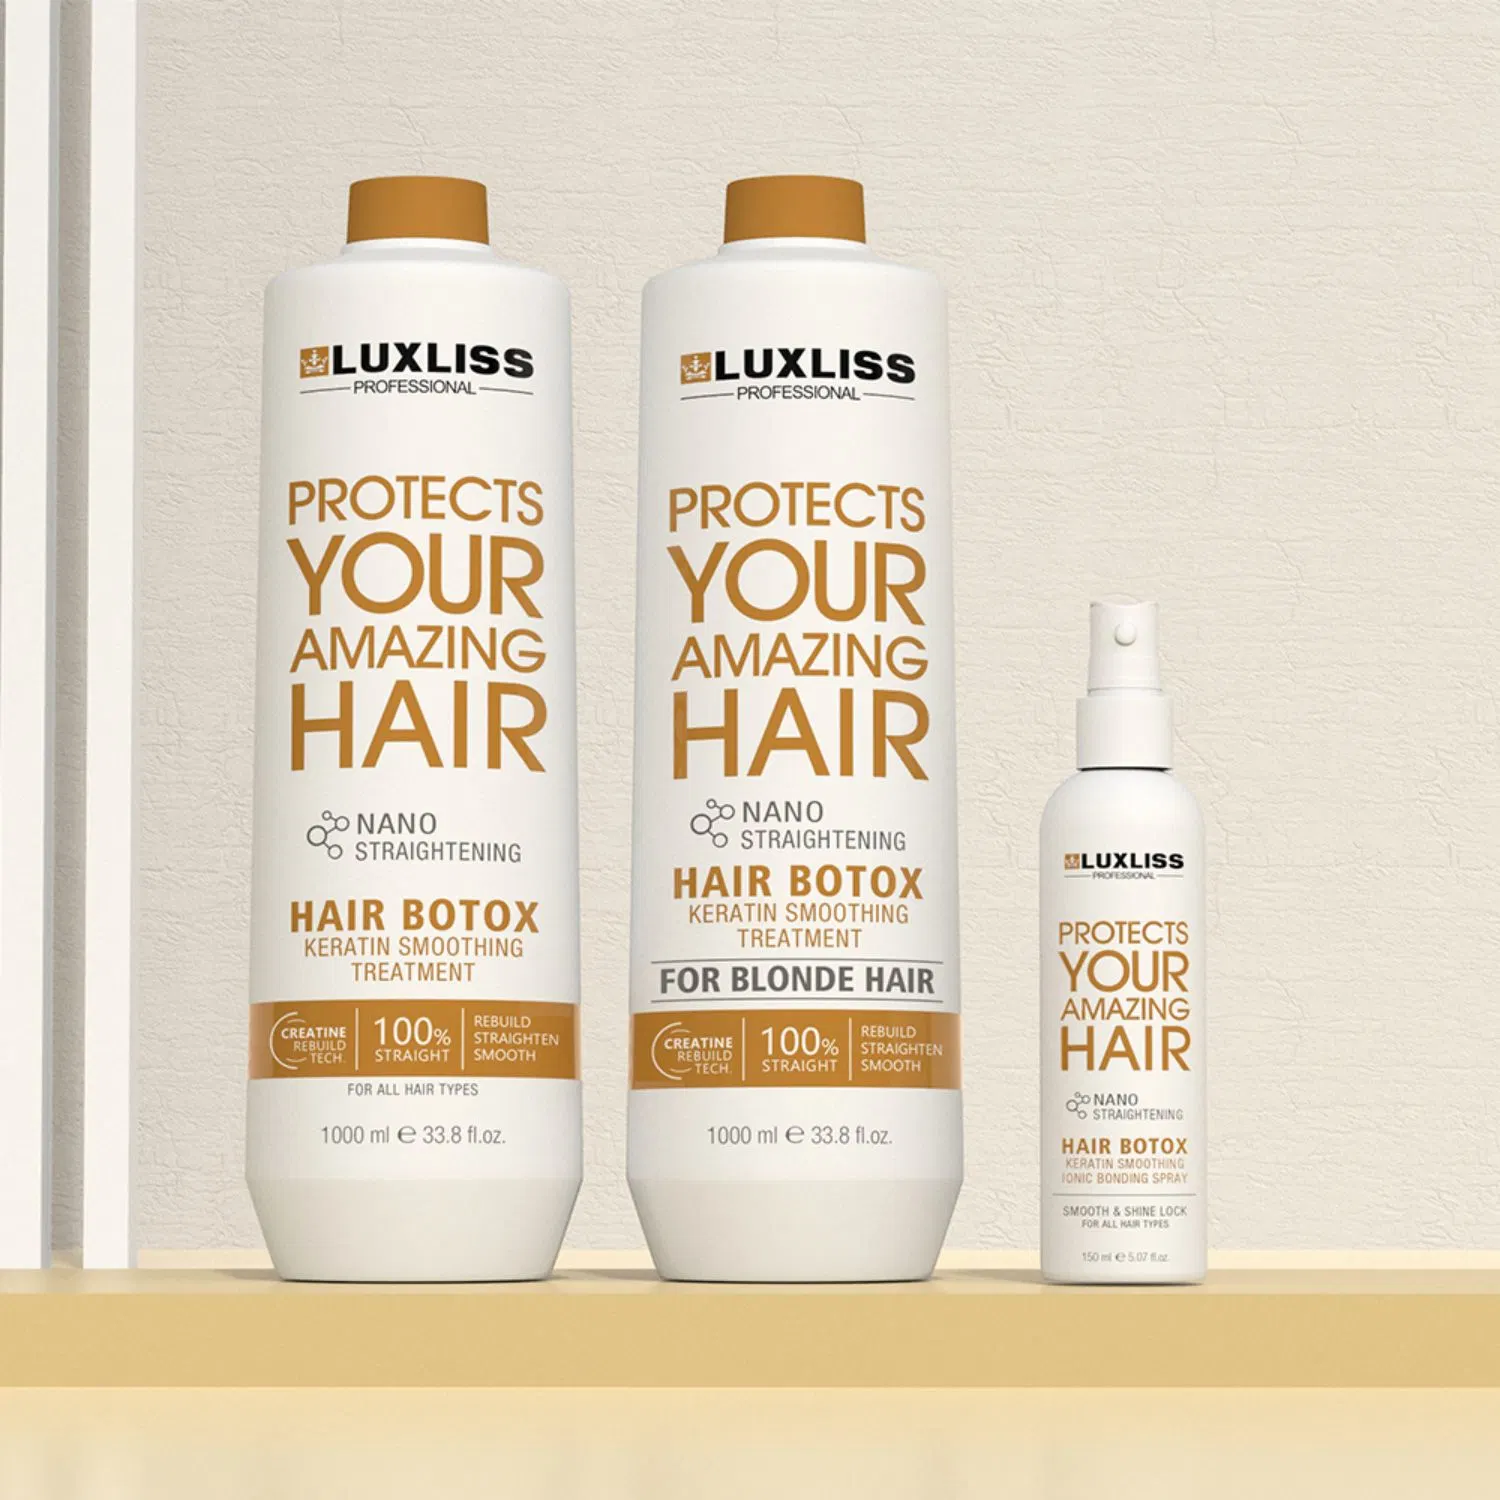 Для ухода за волосами - это профессиональное качество Nano ботокс сглаживание кератин волос обращения Luxliss продукты для ухода за волосами салон обращения